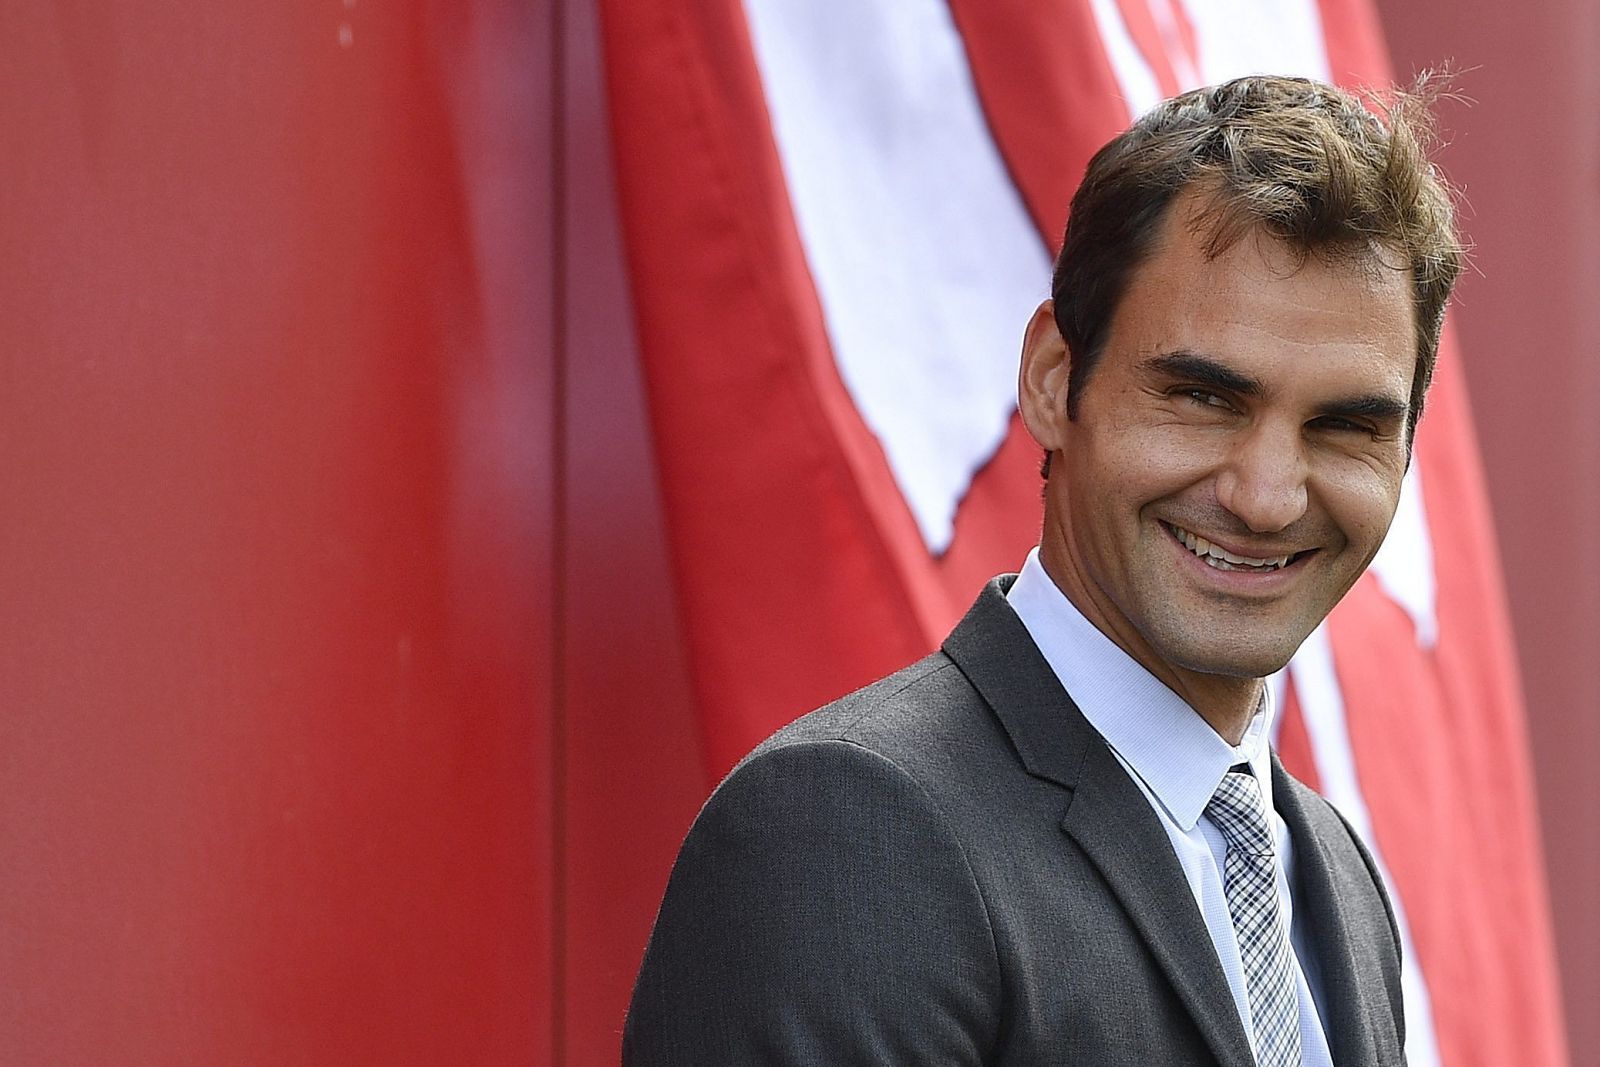 El tenista suizo Roger Federer durante el acto de inaguración de la calle "Roger-Federer-Allee".